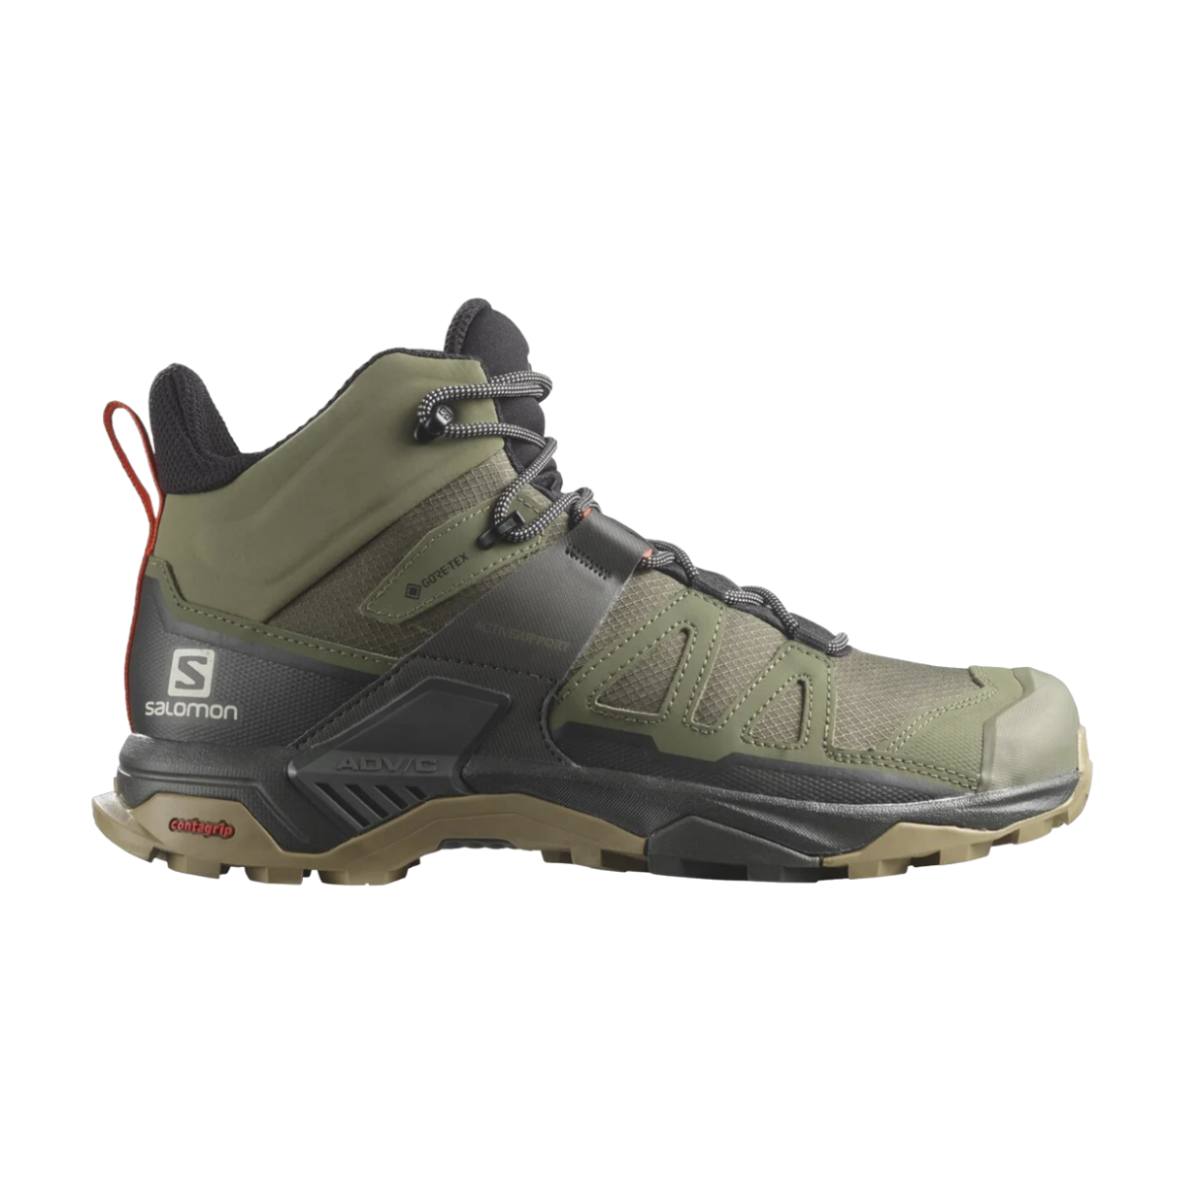 Salomon X Ultra 4 Mid GTX Hiking Boots - Green